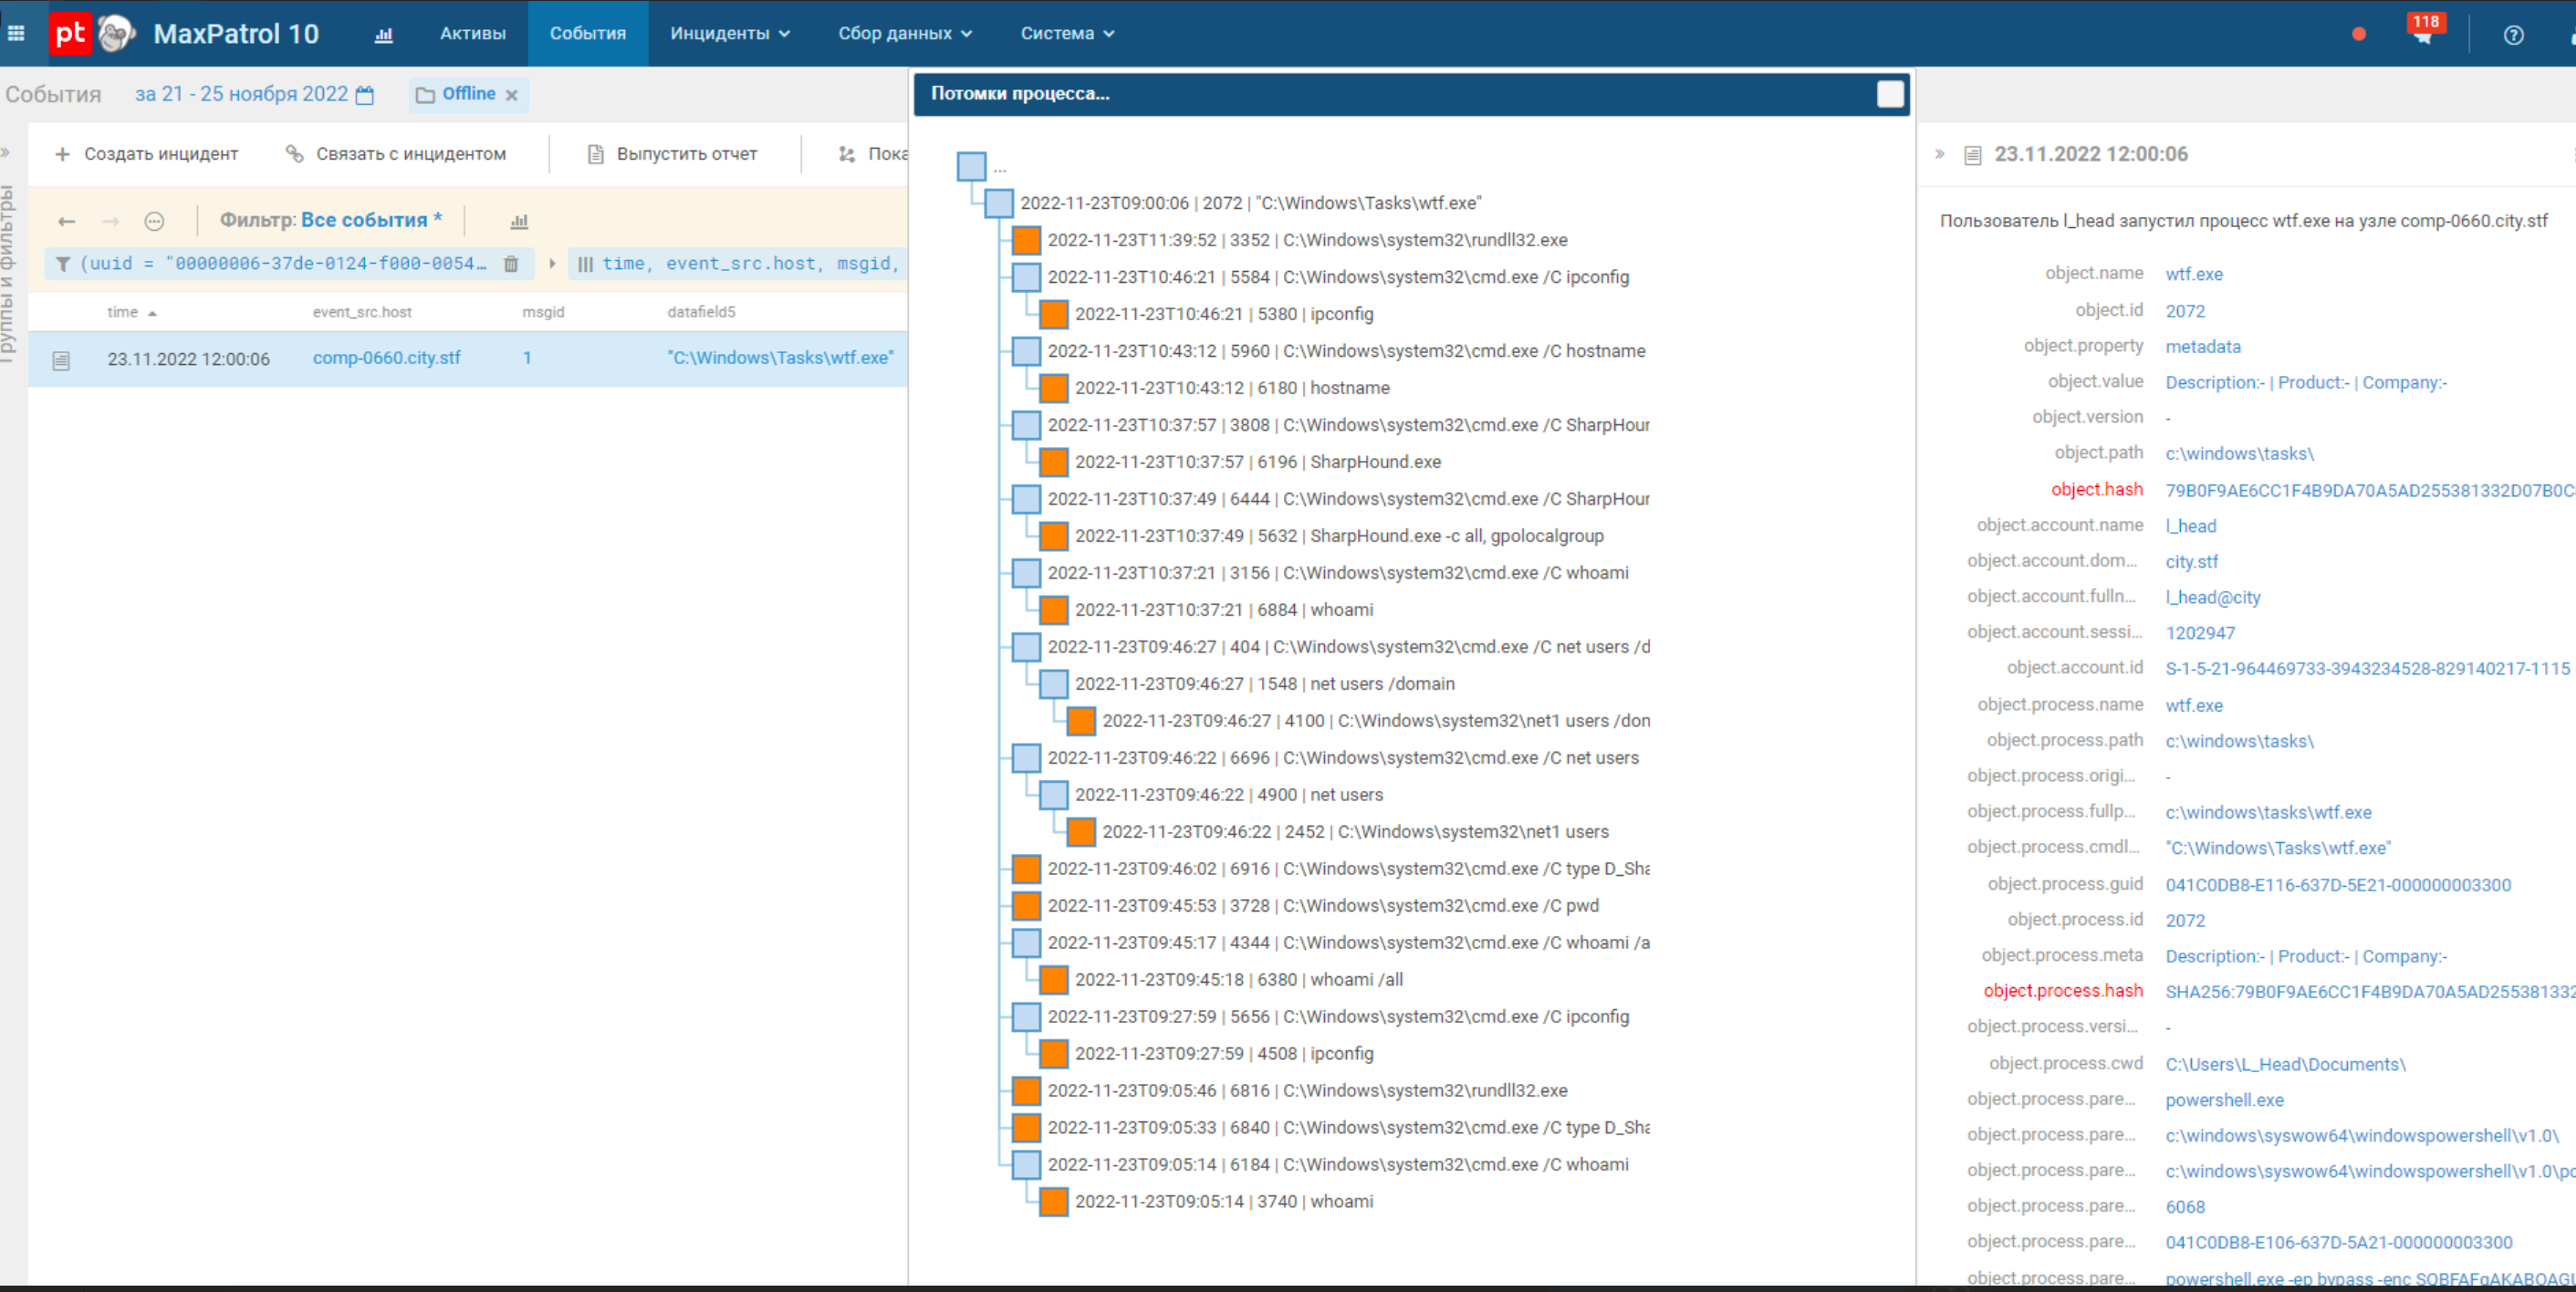 Рис. 3. Пример расширения для браузера, строящего дерево процессов по событиям из базы данных по запросу пользователя